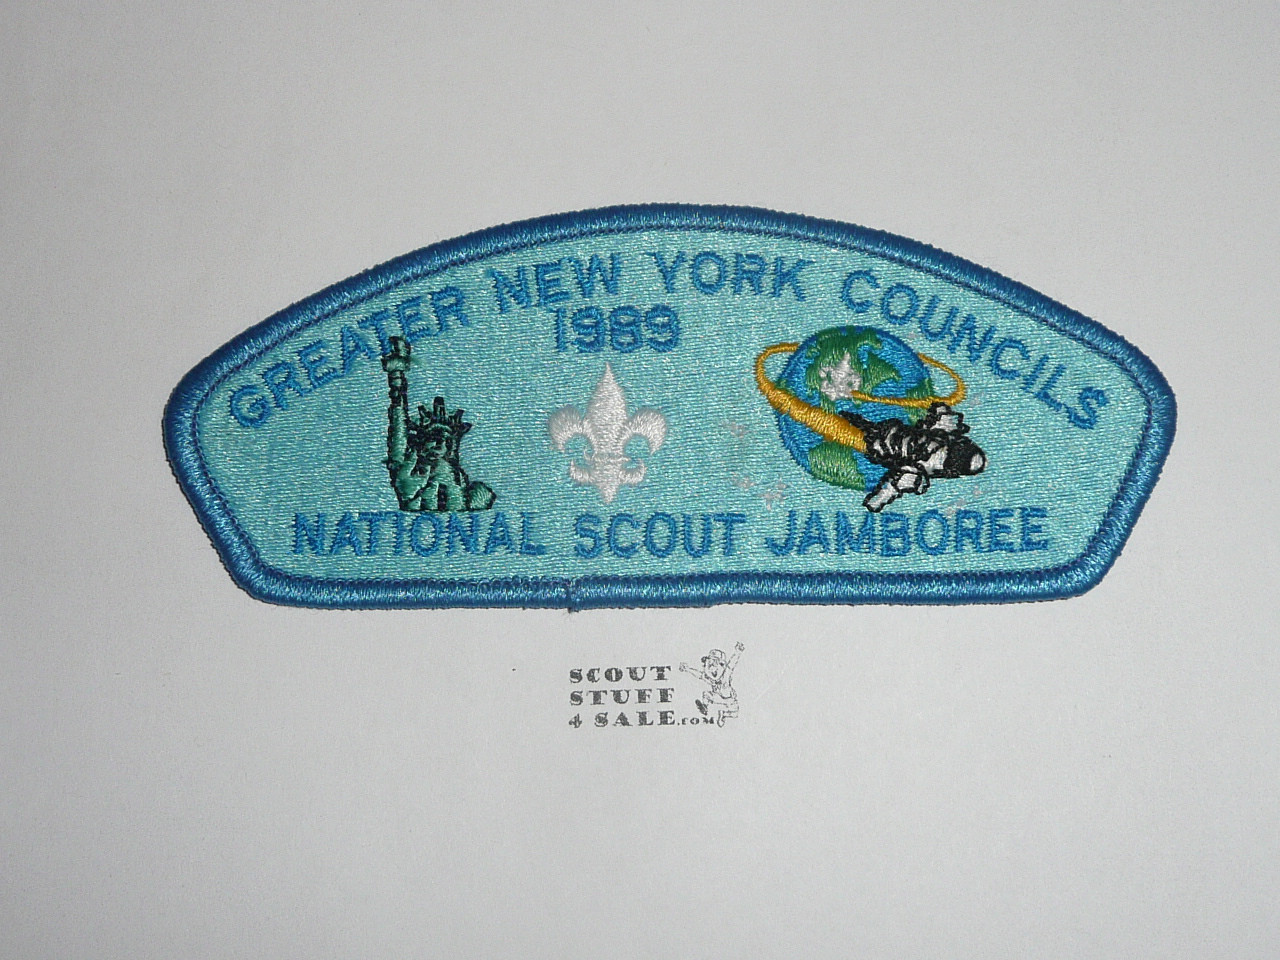 1989 National Jamboree JSP - Greater New York Councils